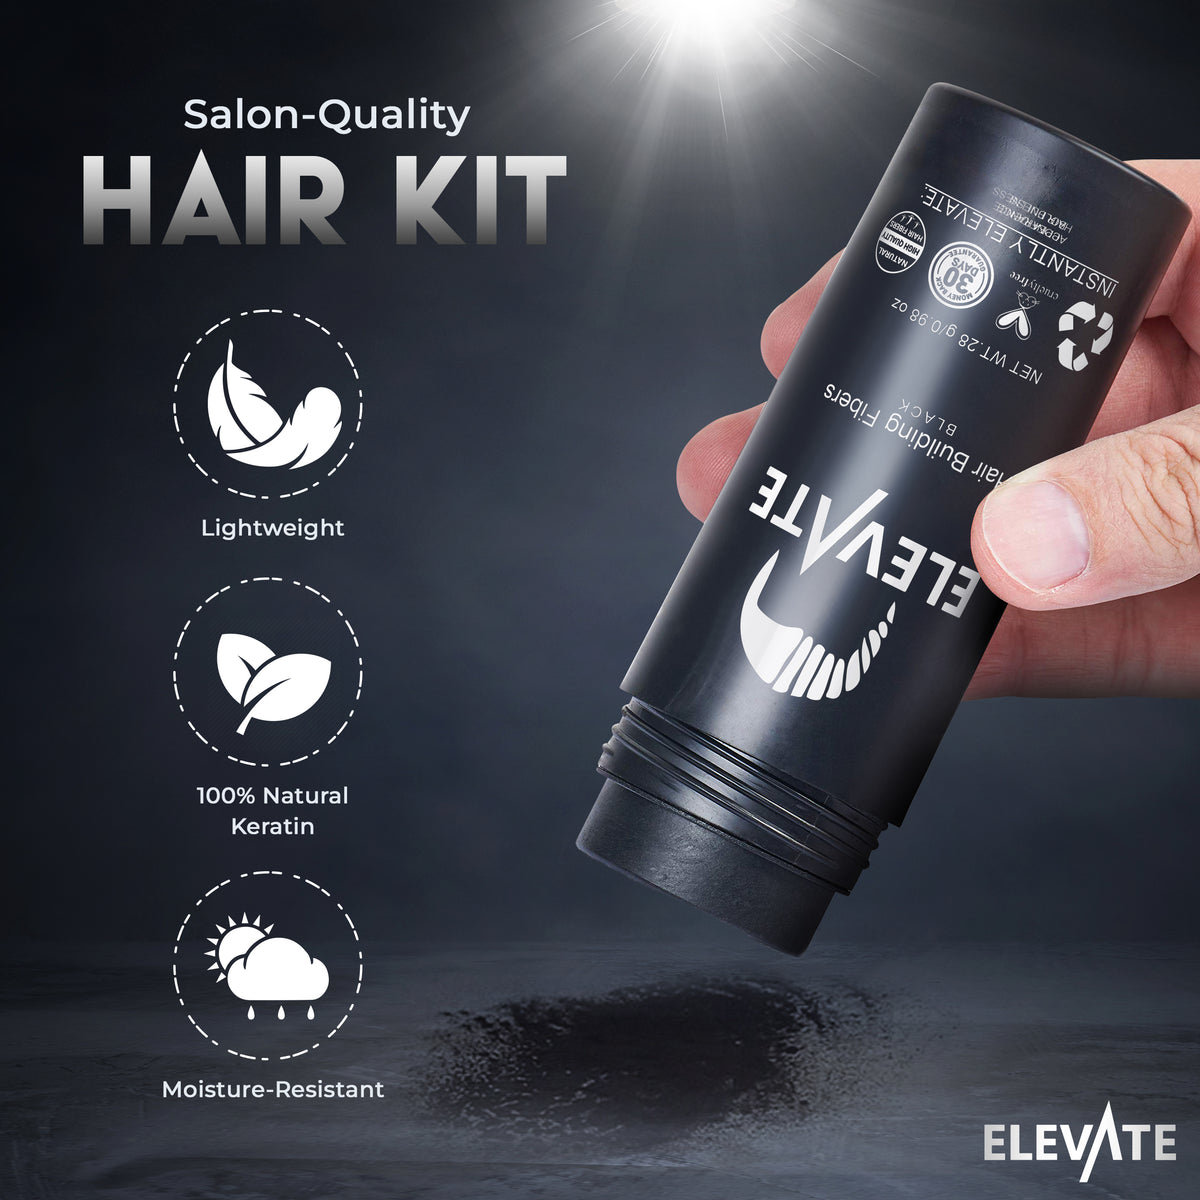 ELEVATE Hair Fibers 100% Natural Keratin Hair Fibers for Men and Women - 28g 0.98oz